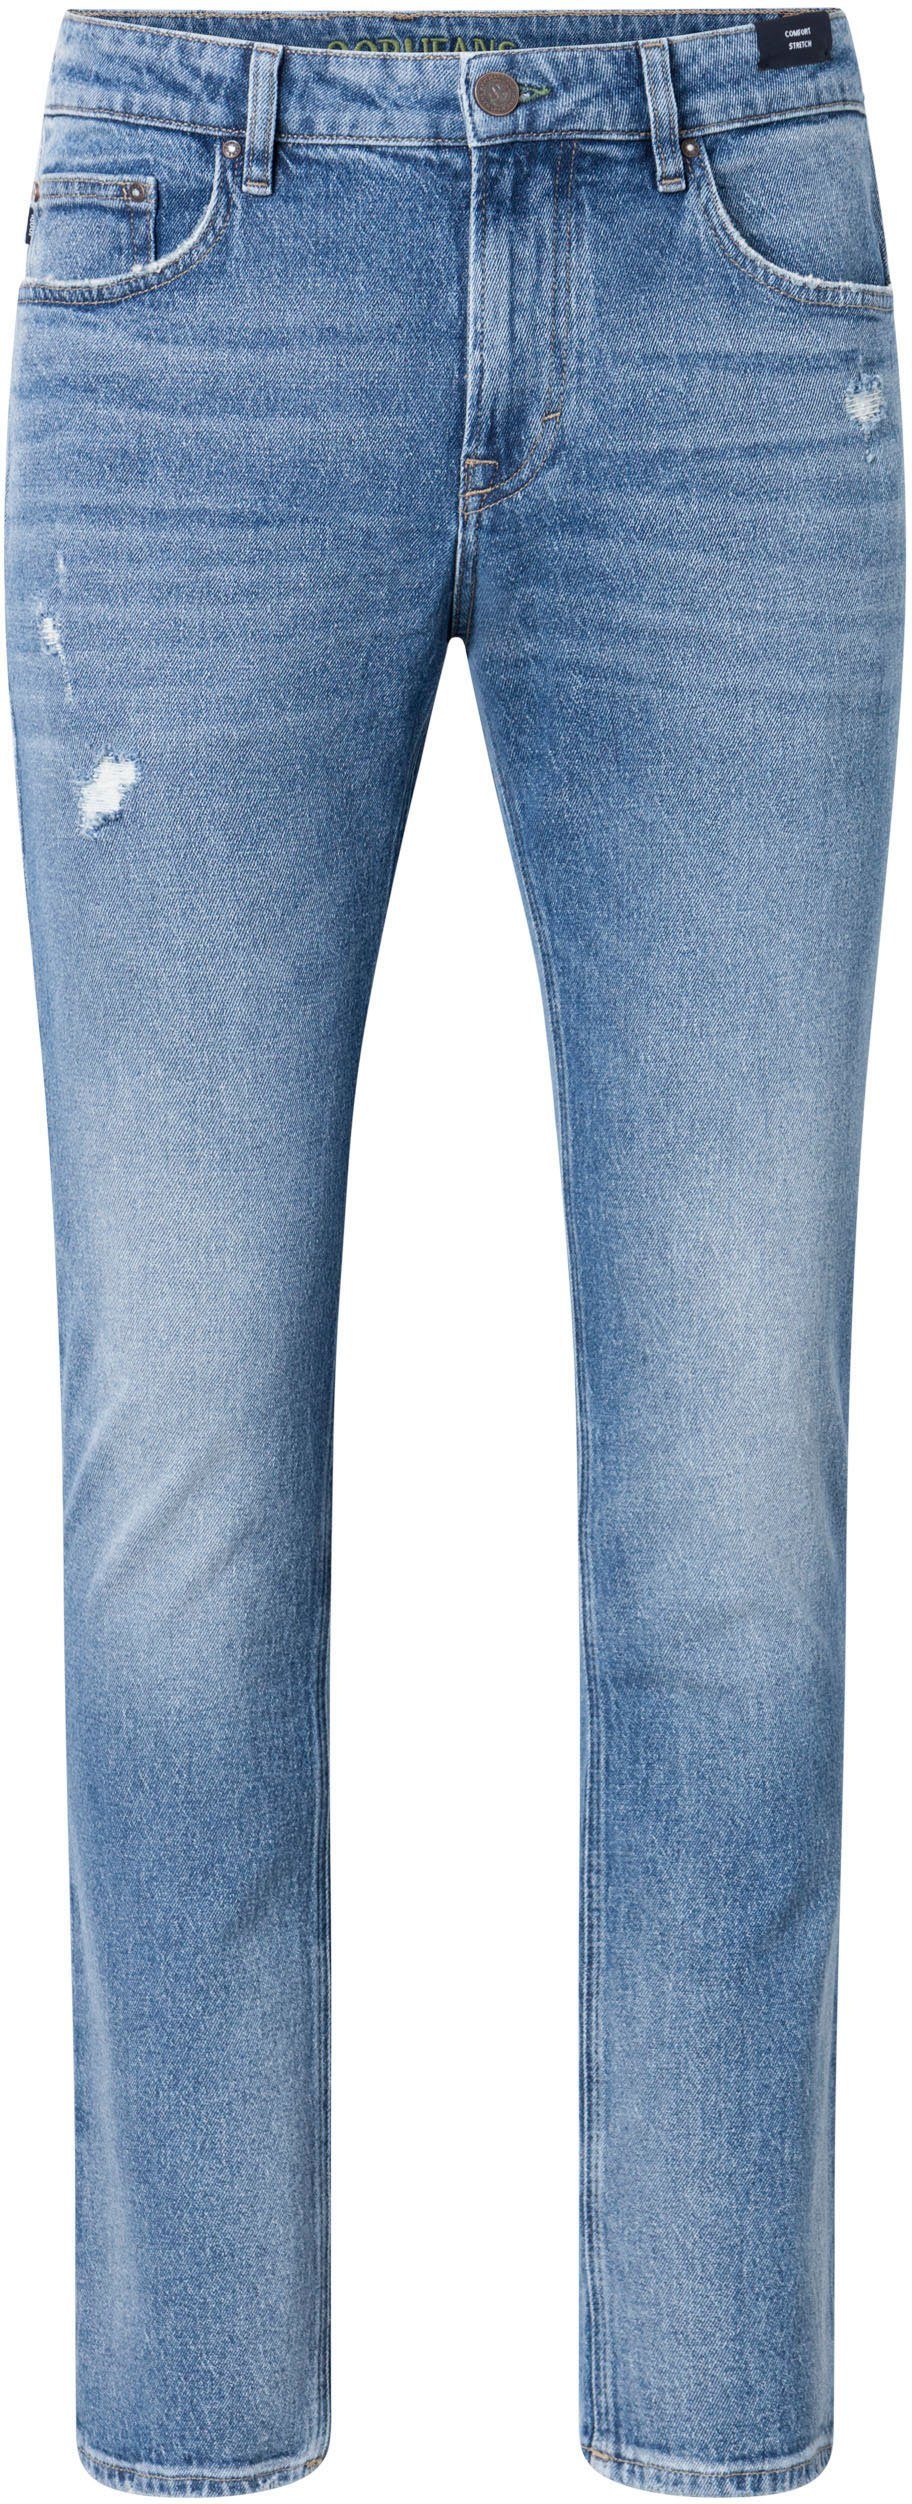 Mitch auf Jeans mit Joop Badge Straight-Jeans 3D-Logo